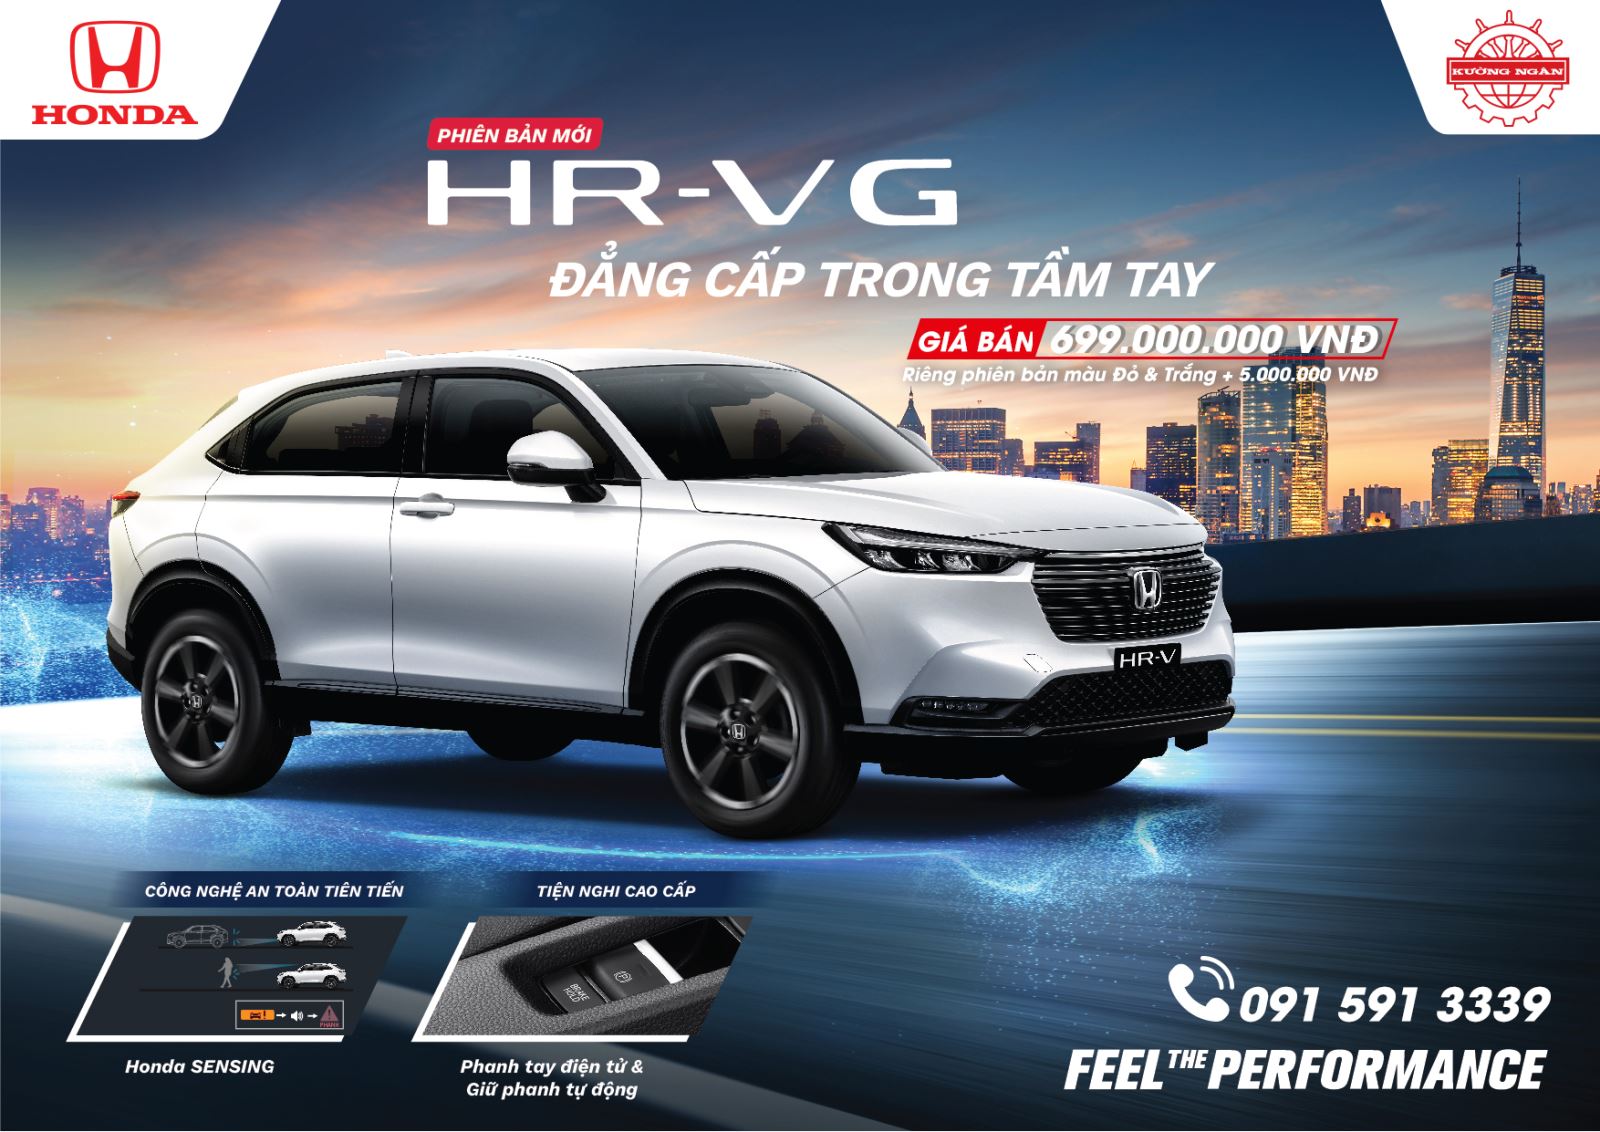 Honda Việt Nam cho ra mắt thêm phiên bản G cho mẫu HR-V thế hệ 2 trong tháng 12/2022